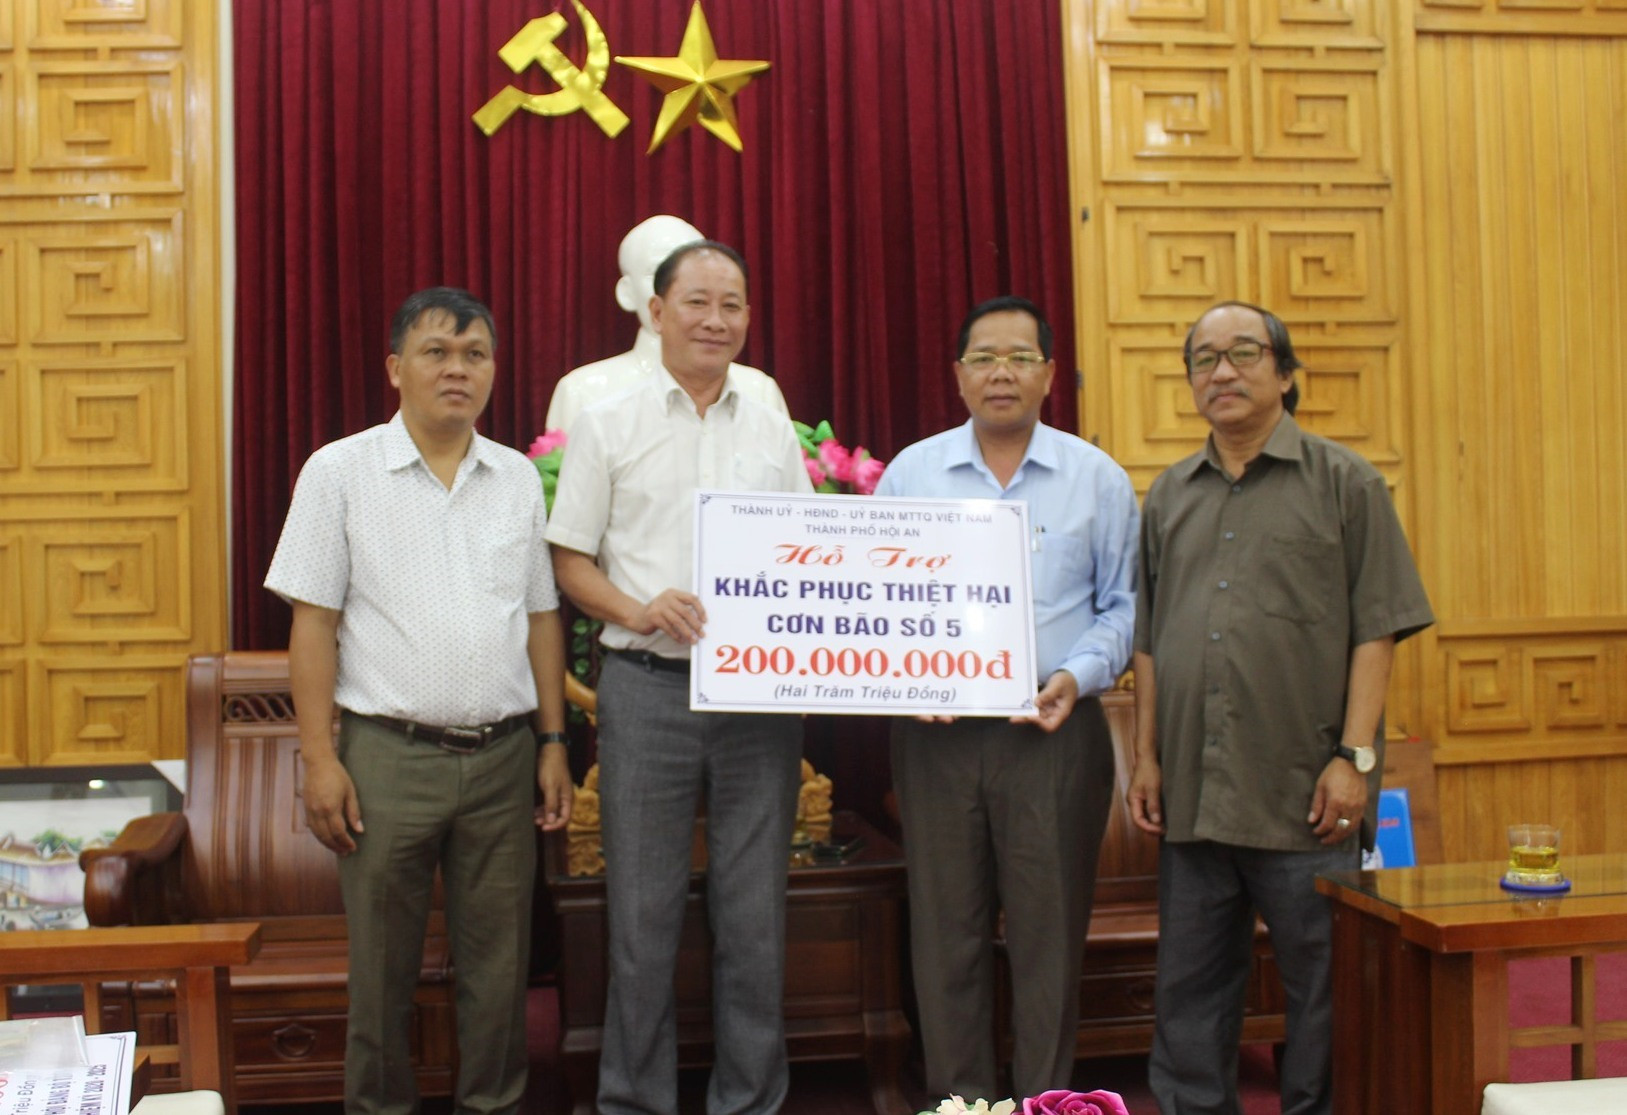 Lãnh đạo thành phố Hội An tặng bảng tượng trưng cho huyện Tây Giang, giúp Tây Giang khắc phục hậu quả cơn bão số 5